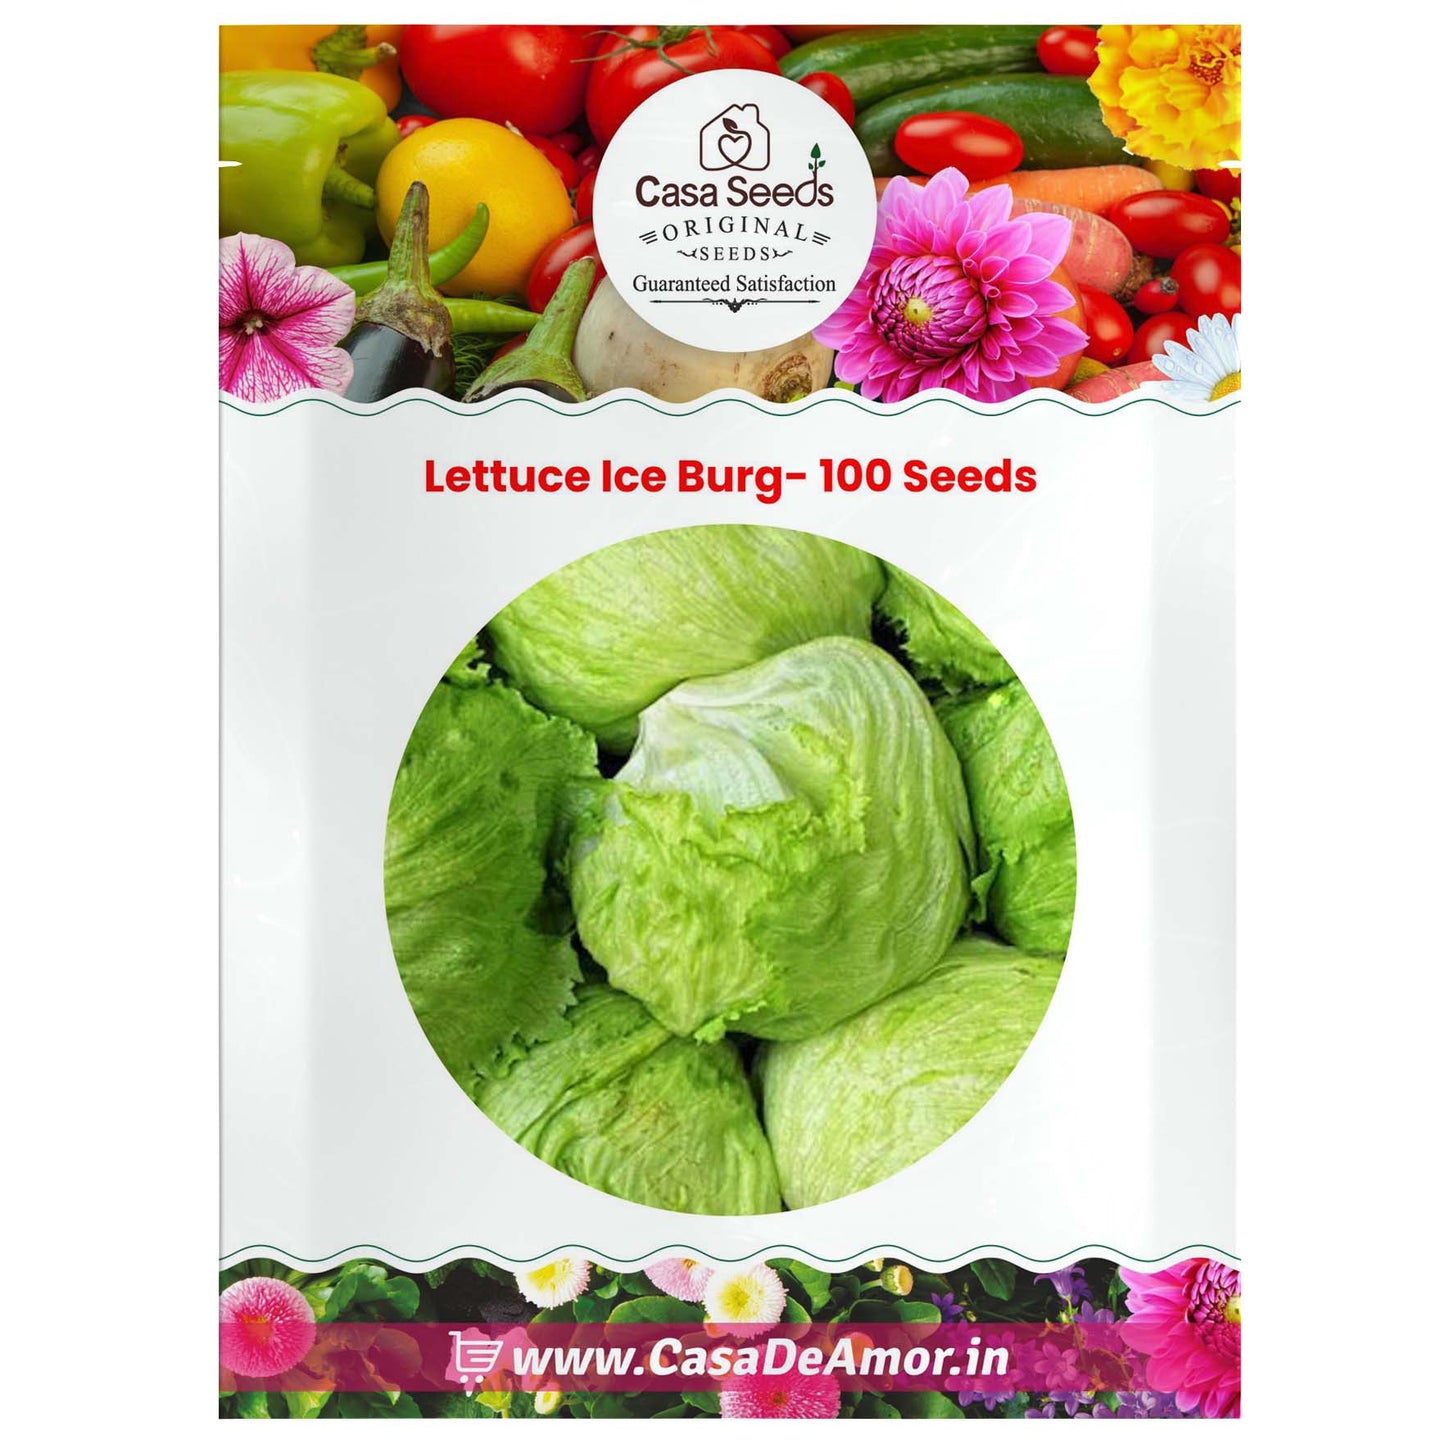 Lettuce Ice Burg- 100 Seeds